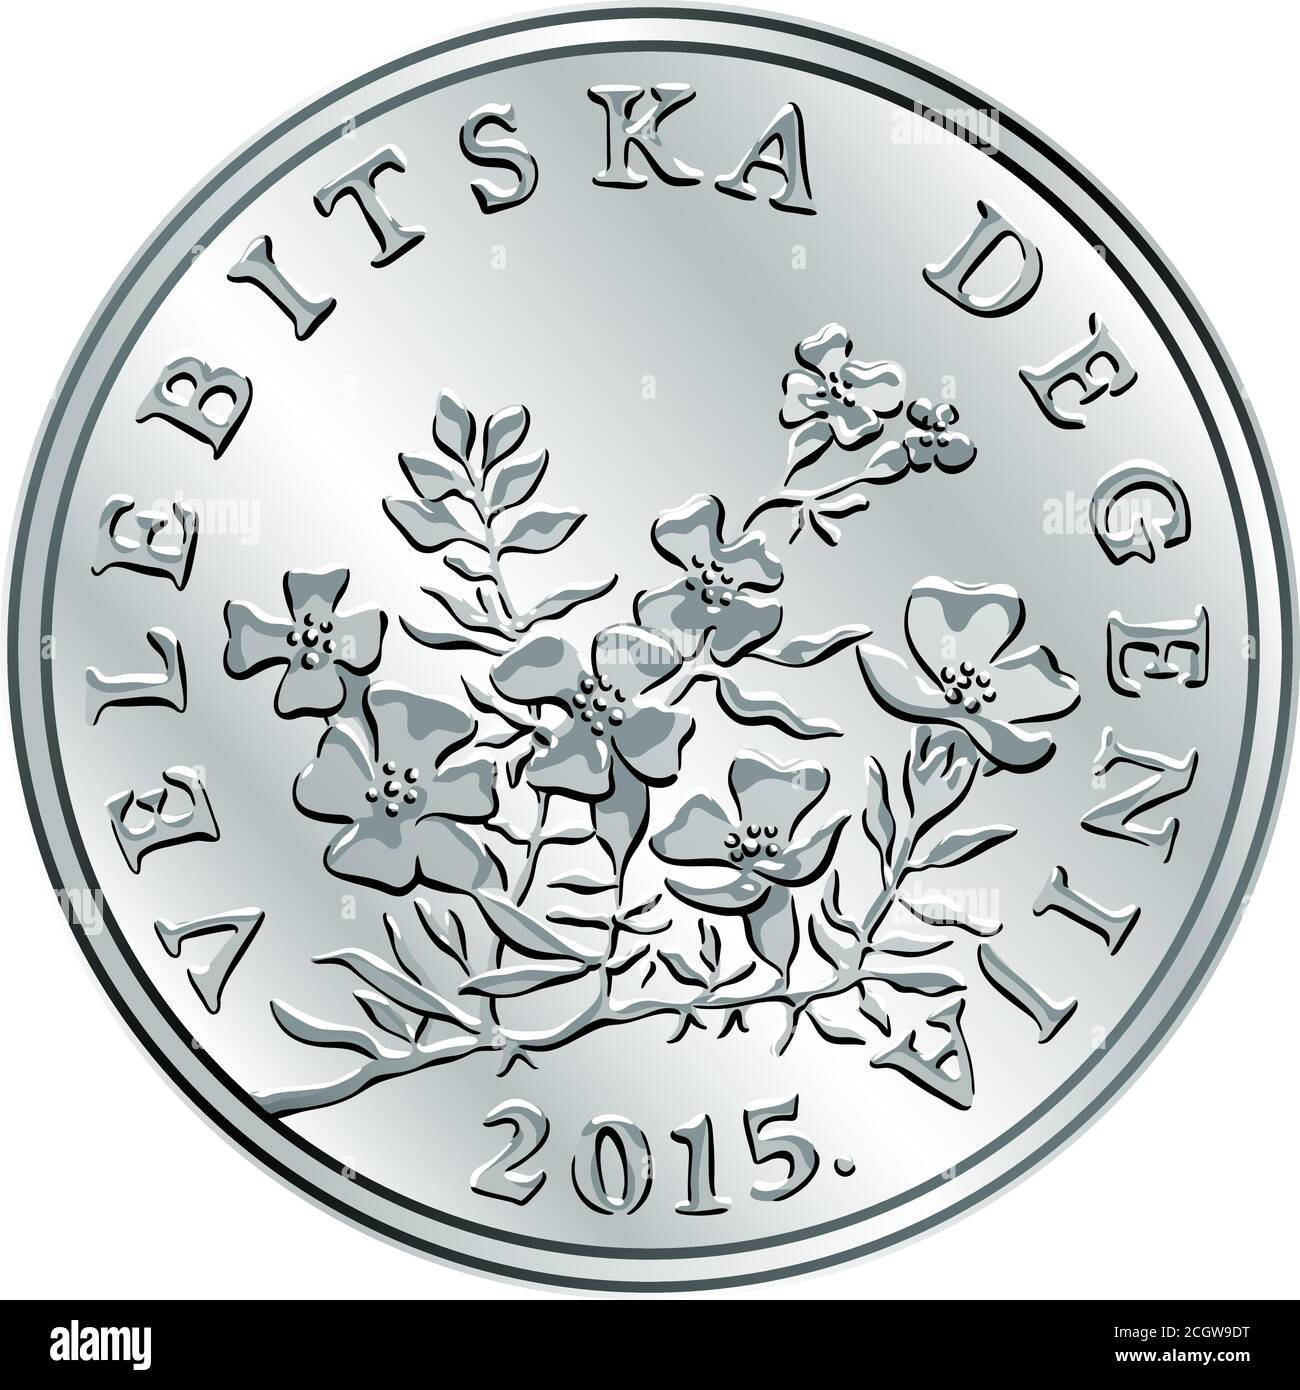 Croate 50 lipa coin, Degenia au dos, monnaie officielle en Croatie Illustration de Vecteur